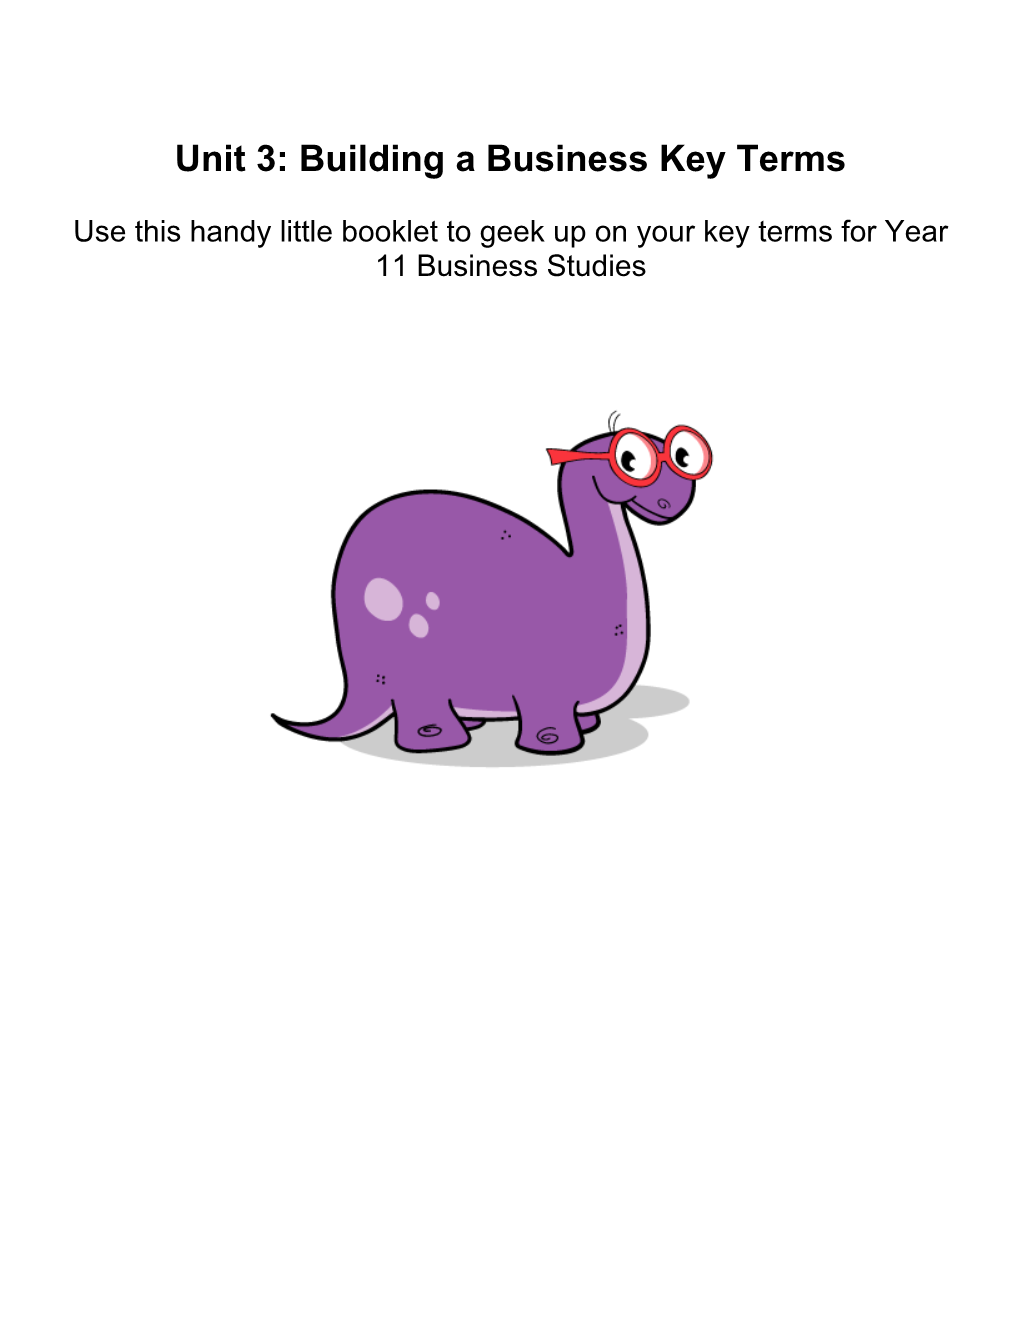 Unit 3 Building a Business Key Terms